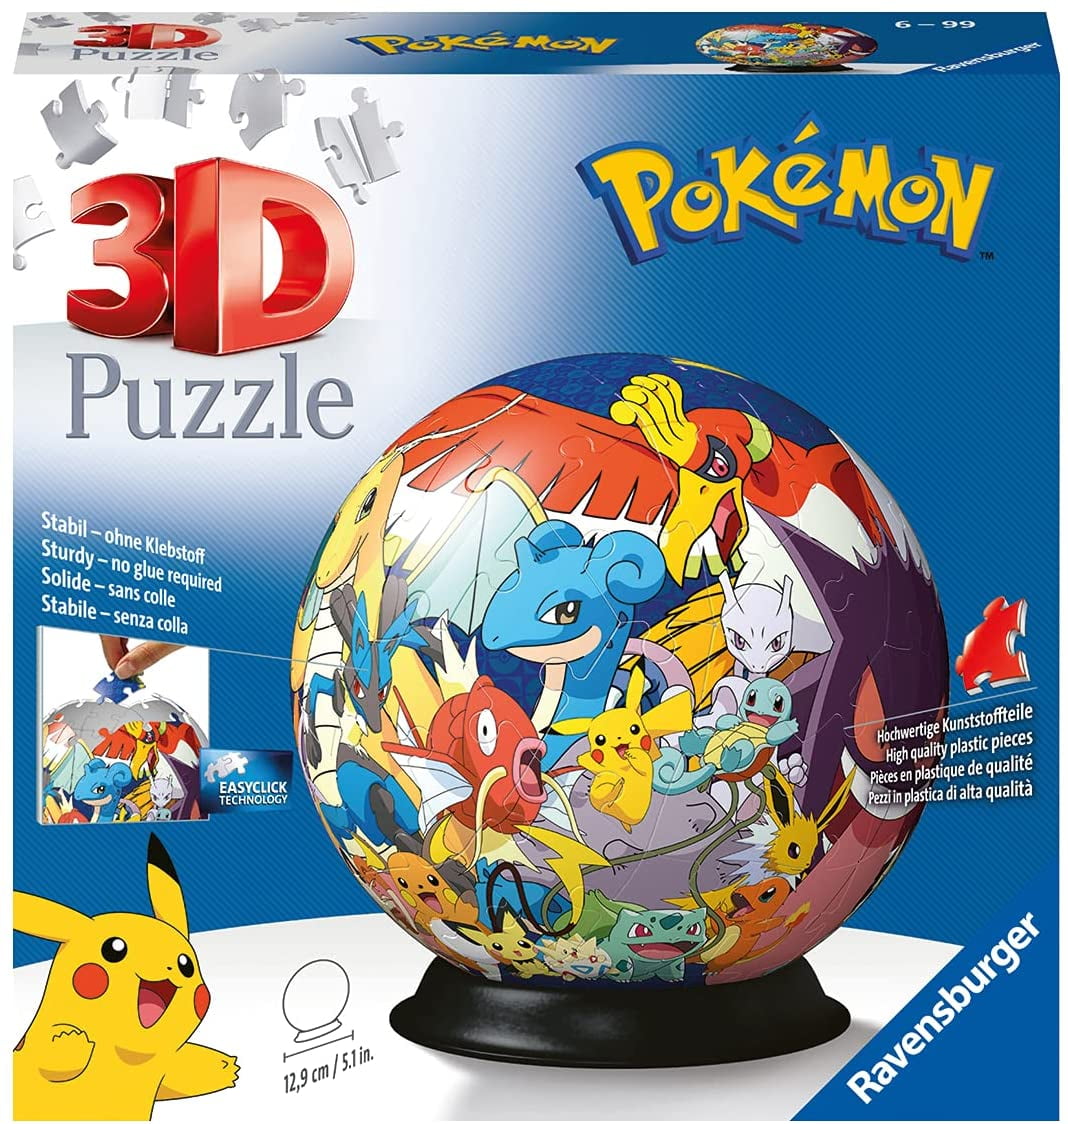 Ravensburger 3D Puzzle 11785 - Puzzle Ball Pokmon - 72 pieces - Puzzle Ball  for Pokmon fans